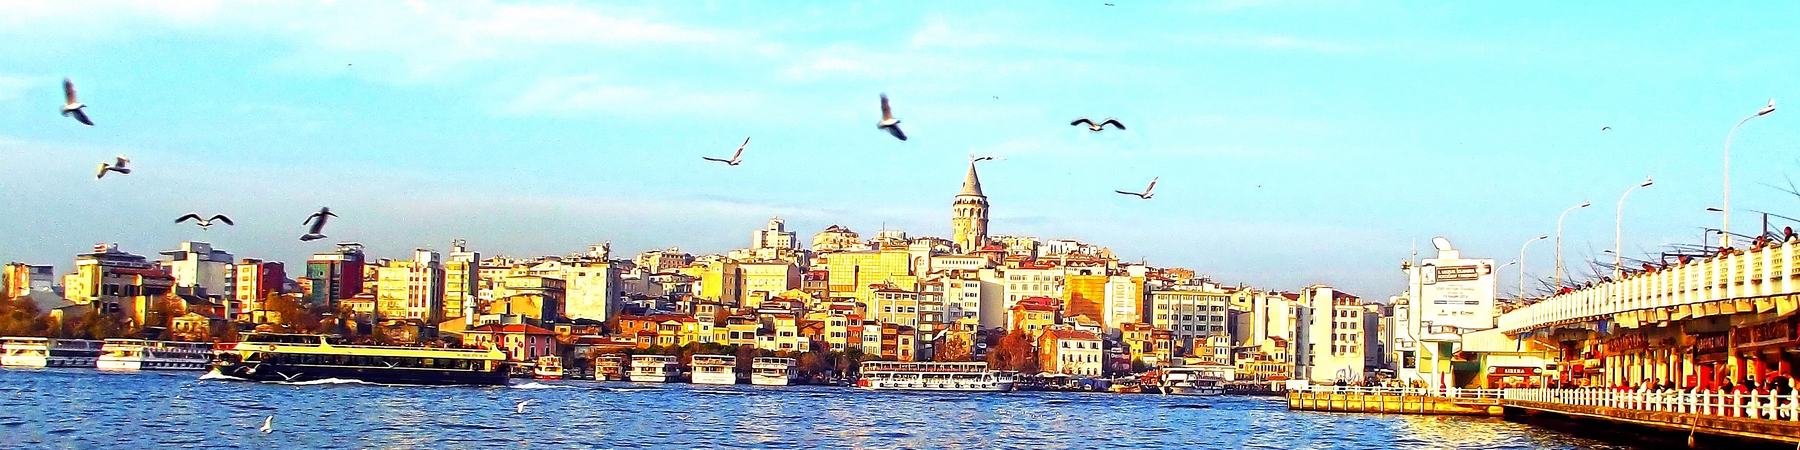 تور استانبول با پرواز اطلس گلوبال